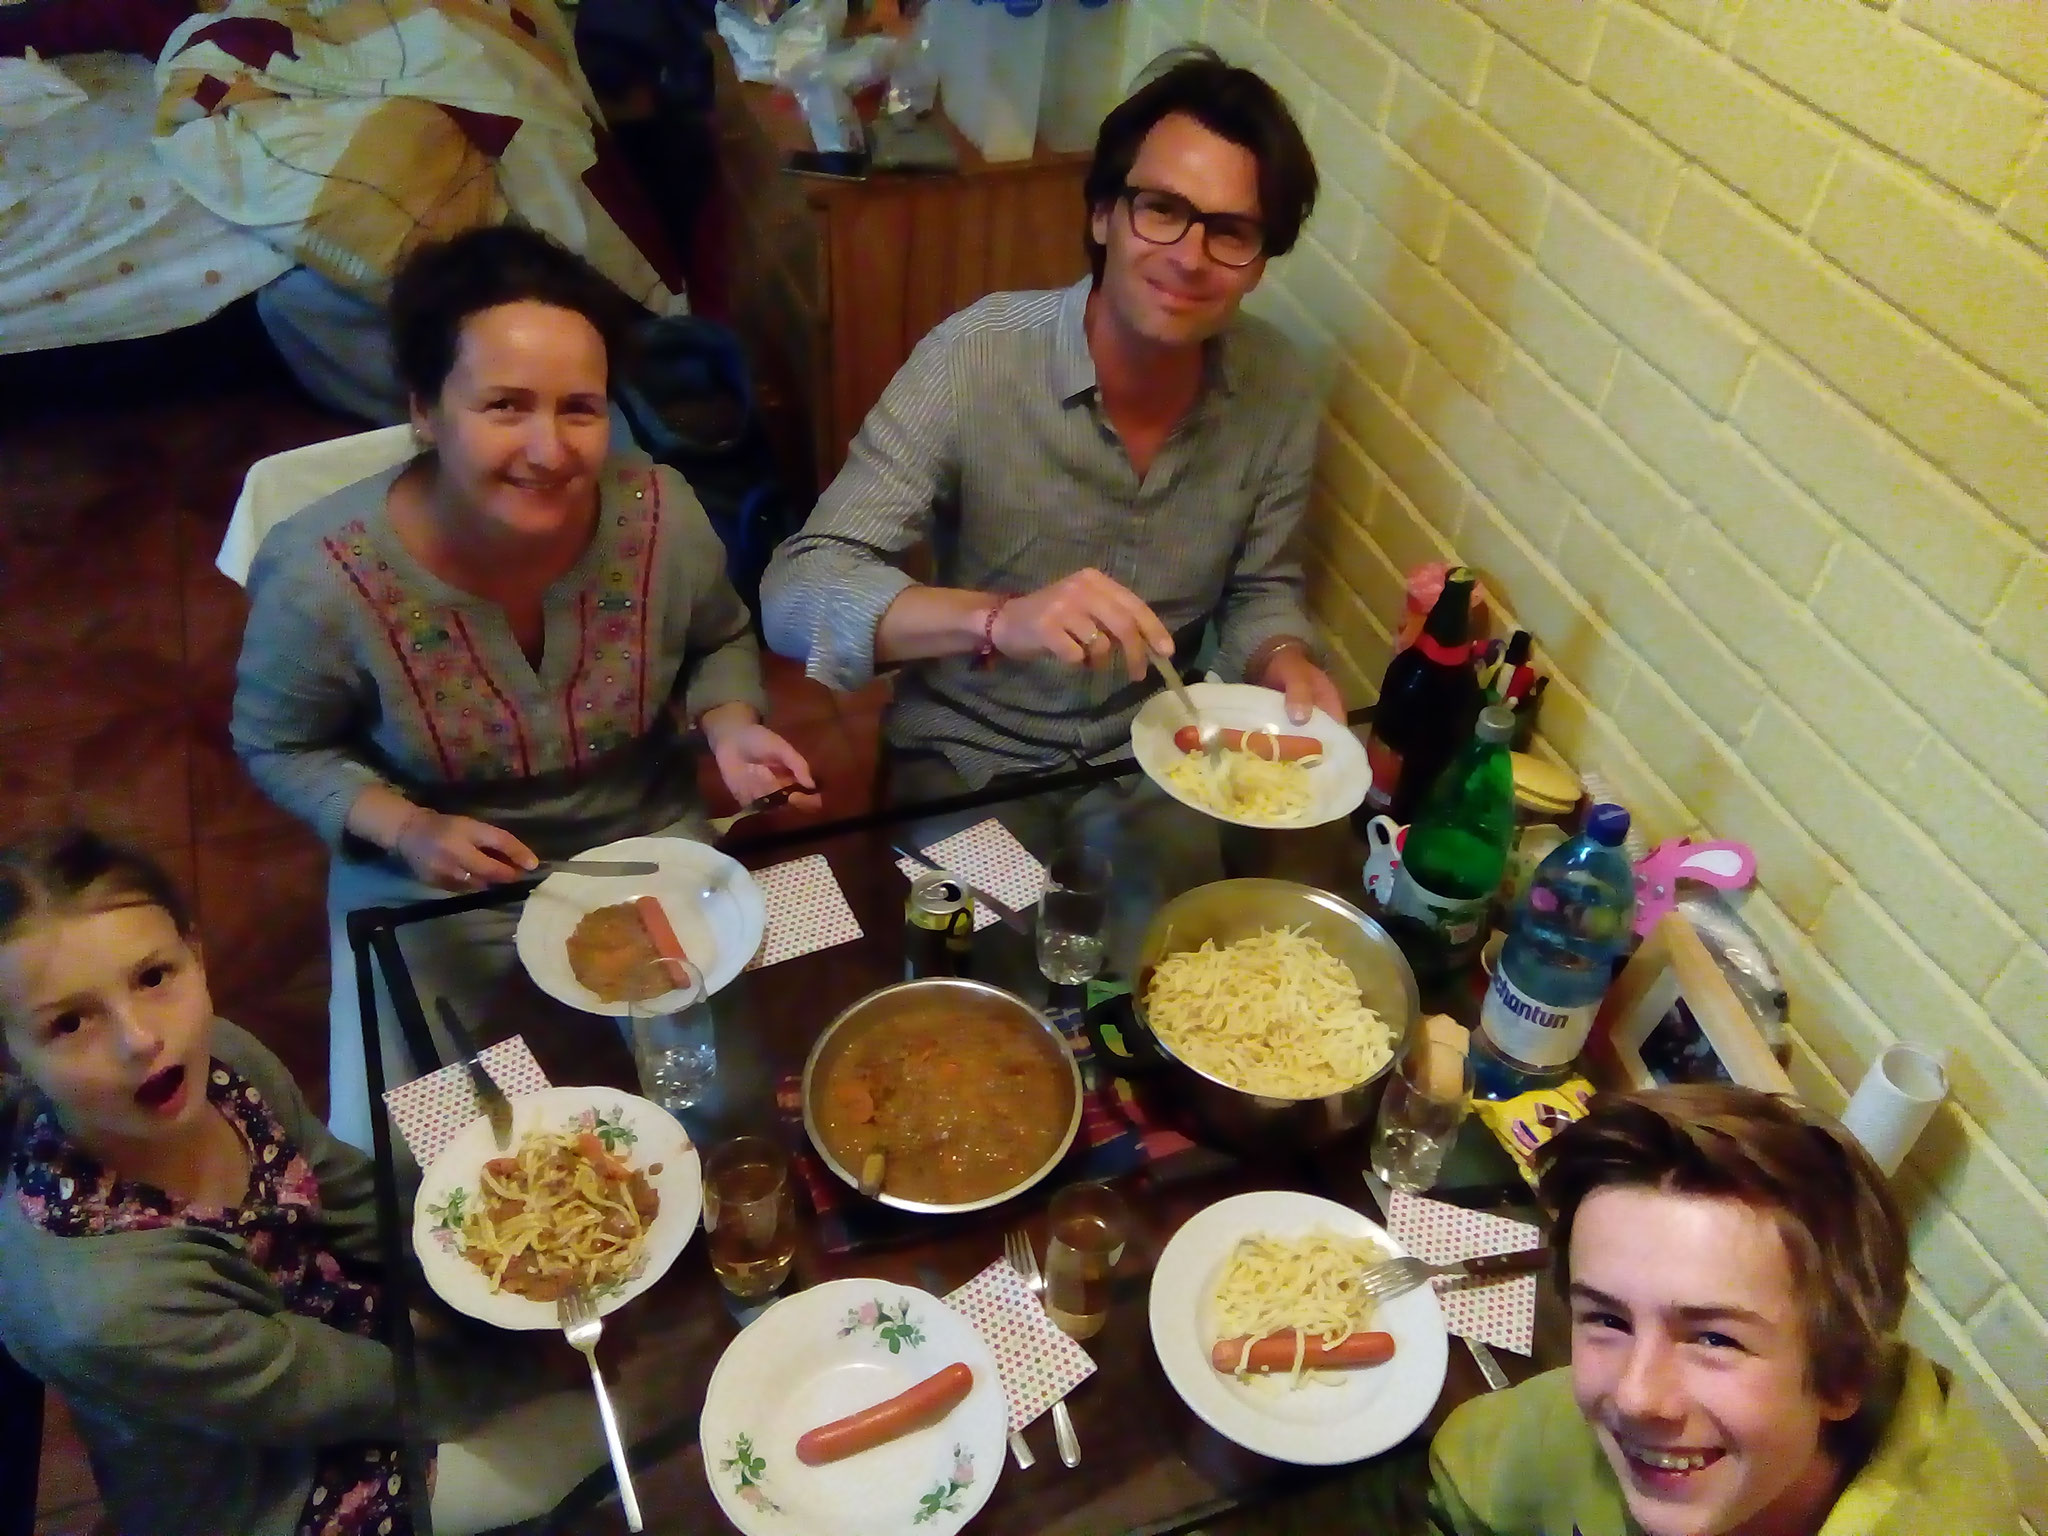 Zusammen mit meiner Mama haben wir sogar ein schwäbisches Essen gezaubert: Linsen mit Spätzle und Würstchen